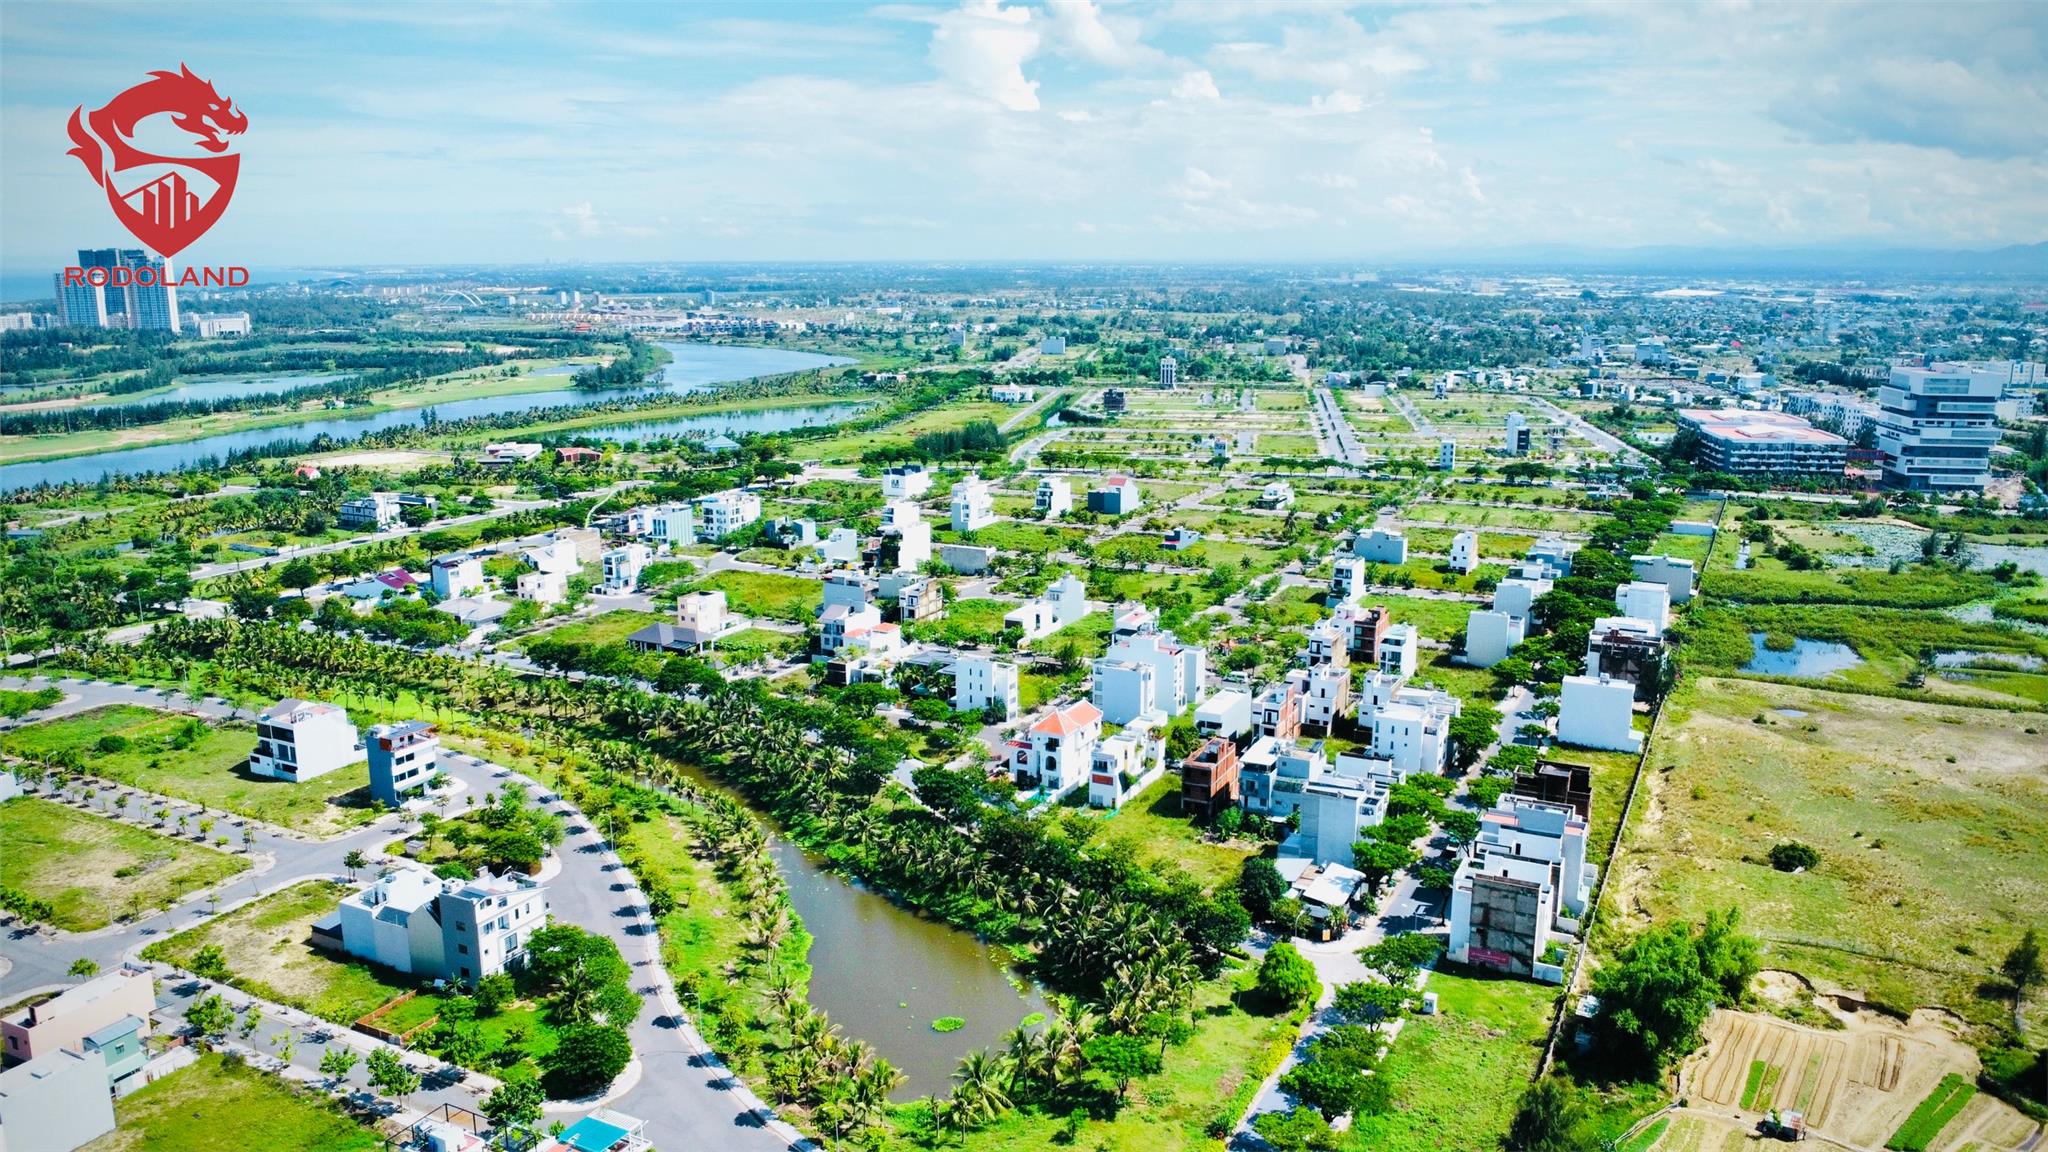 RẺ NHẤT: Cho thuê 204m2 đất FPT sát Trường Đại học FPT Đà Nẵng. Liên hệ: 0905.31.89.88 3